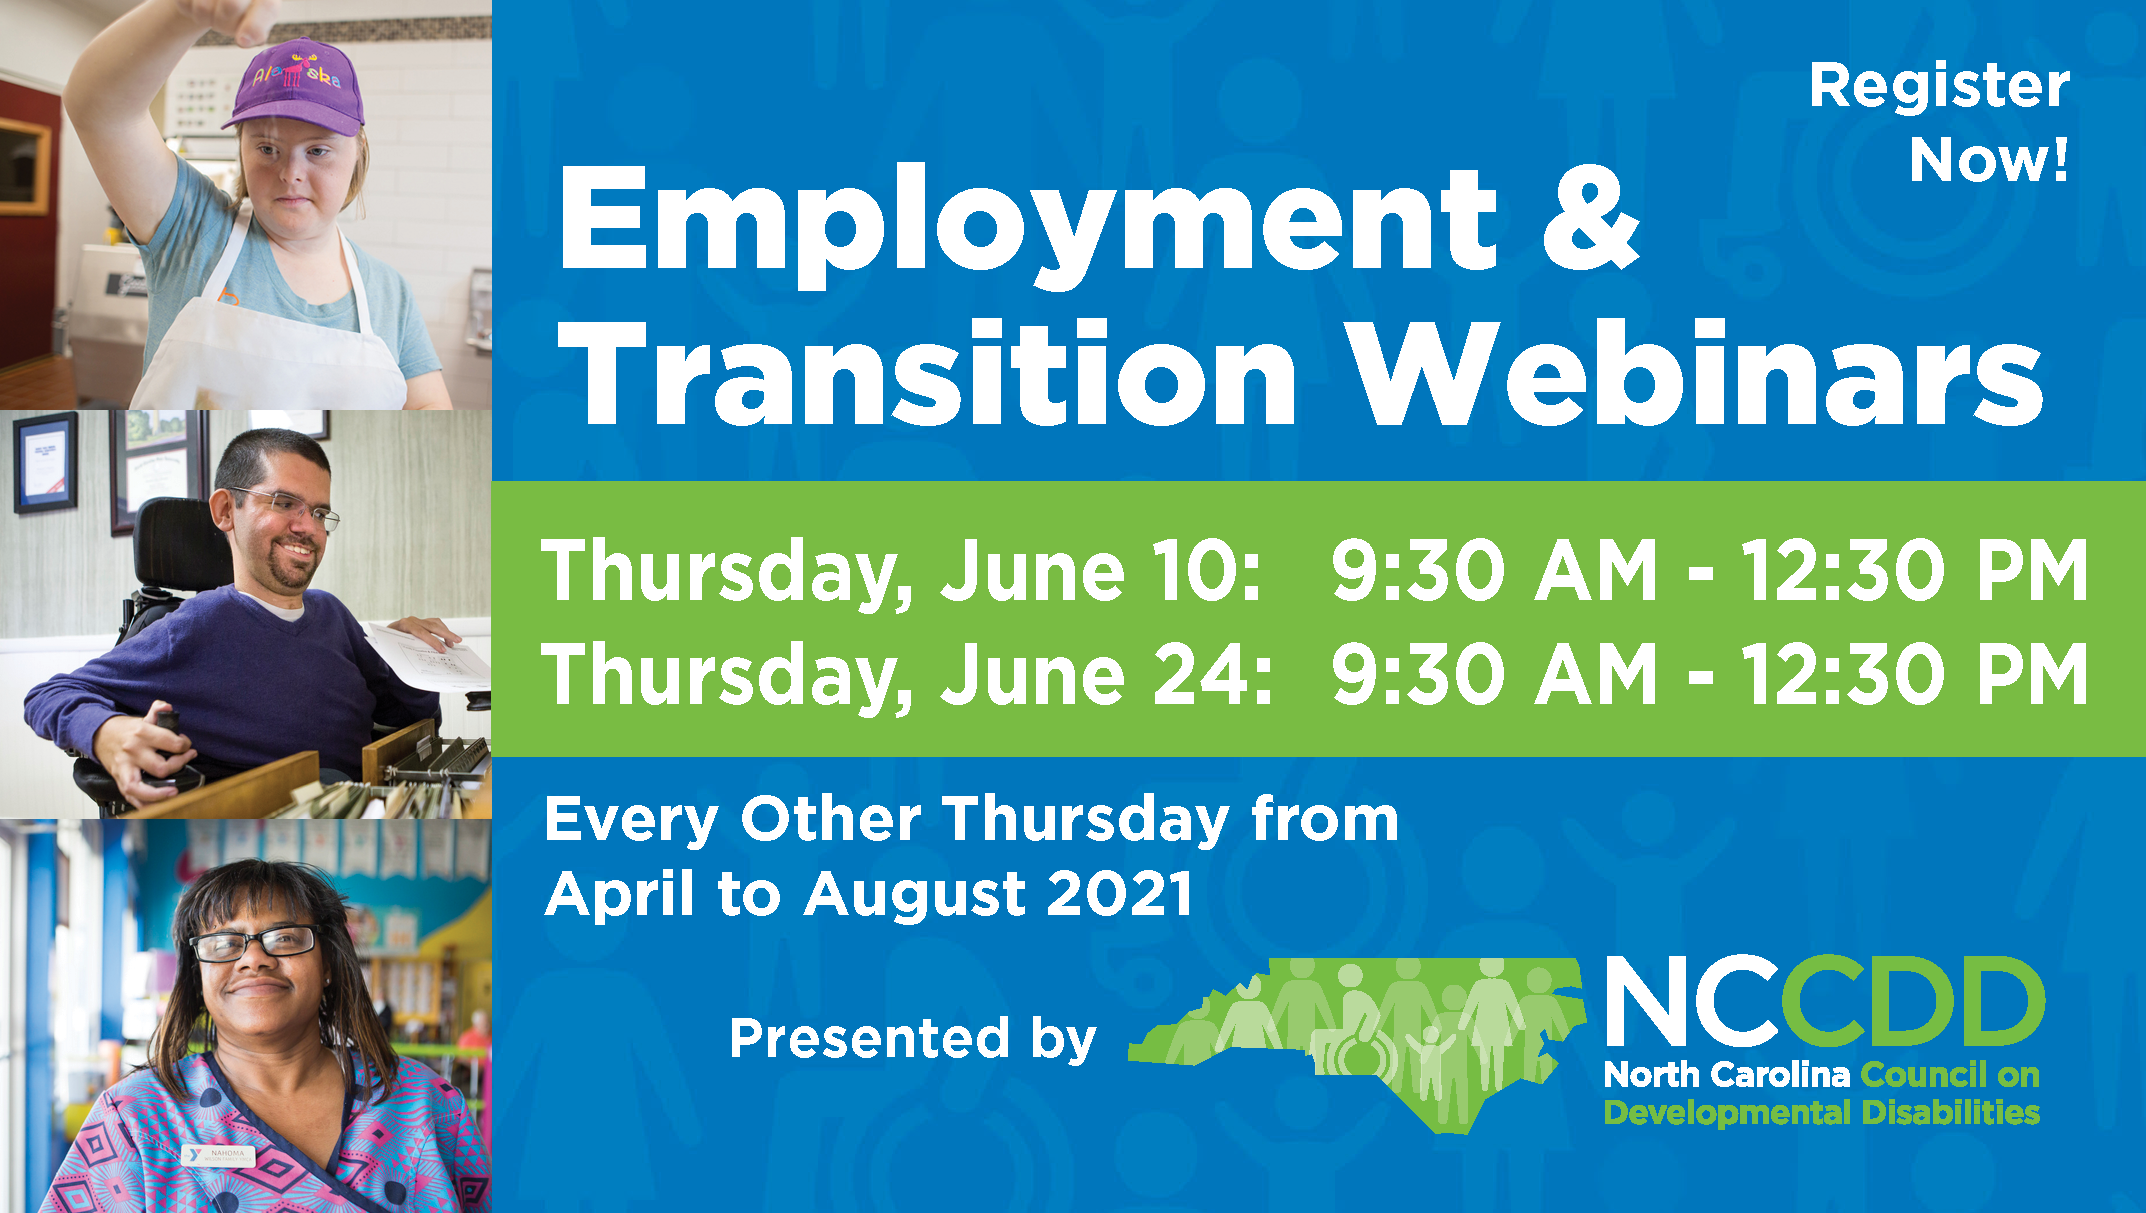 NCCDD Employment Webinars June 10 & June 24